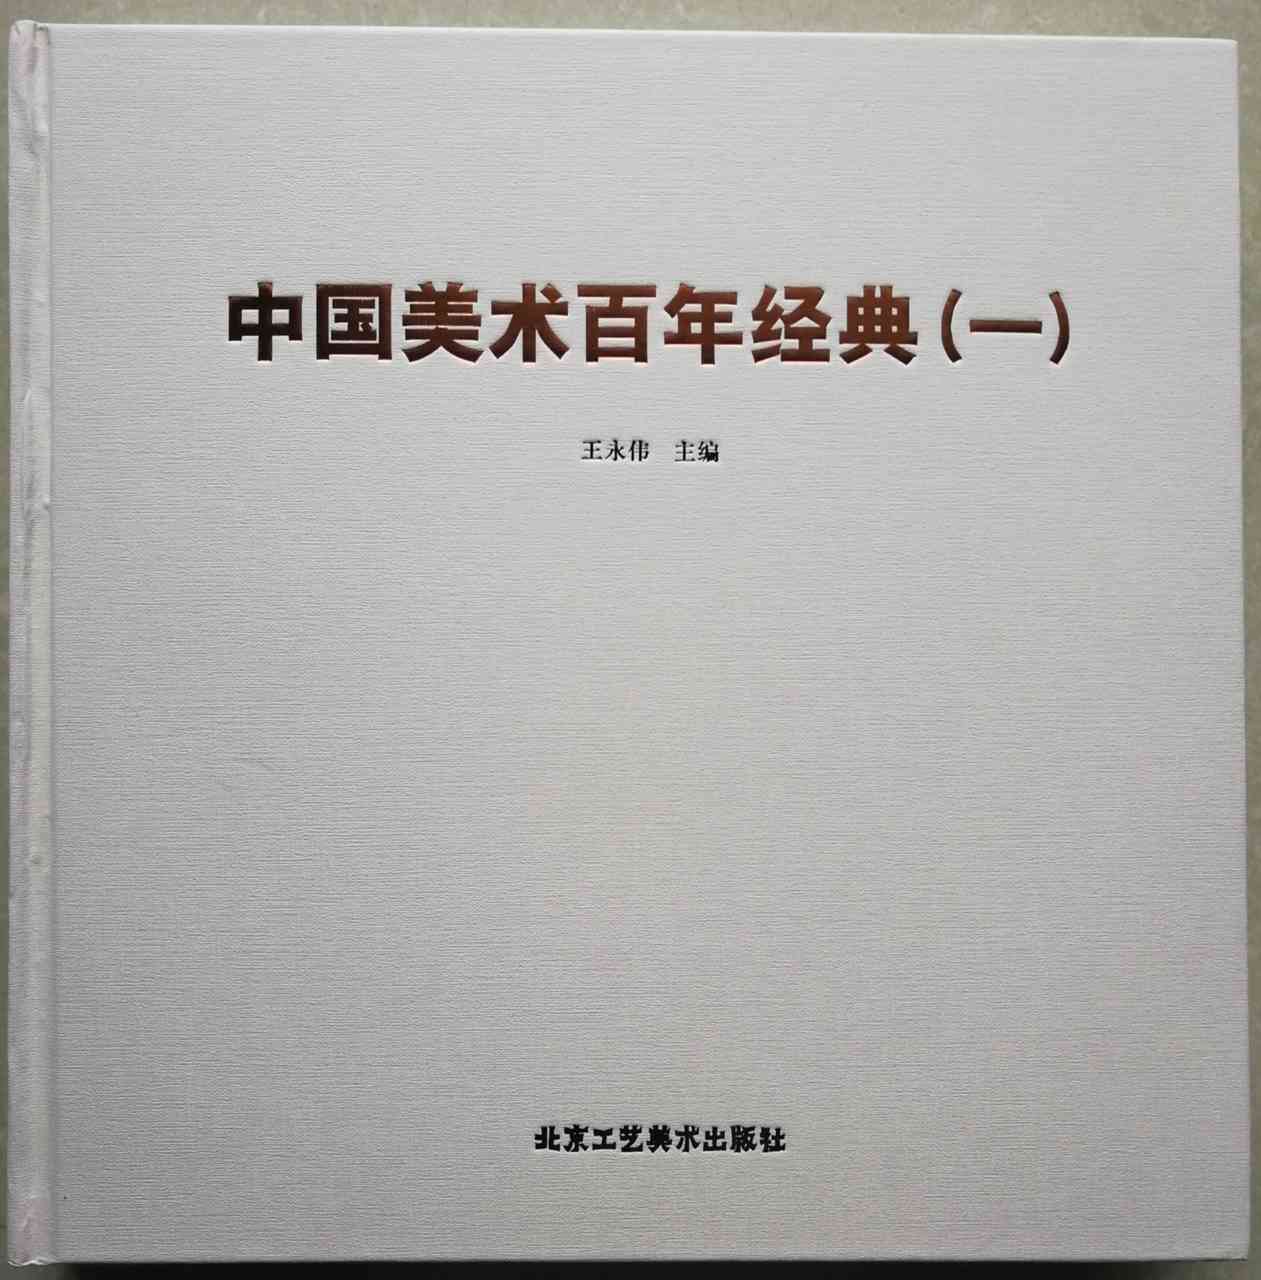 《中国美术百年经典》【花鸟篇】林培铭作品赏析